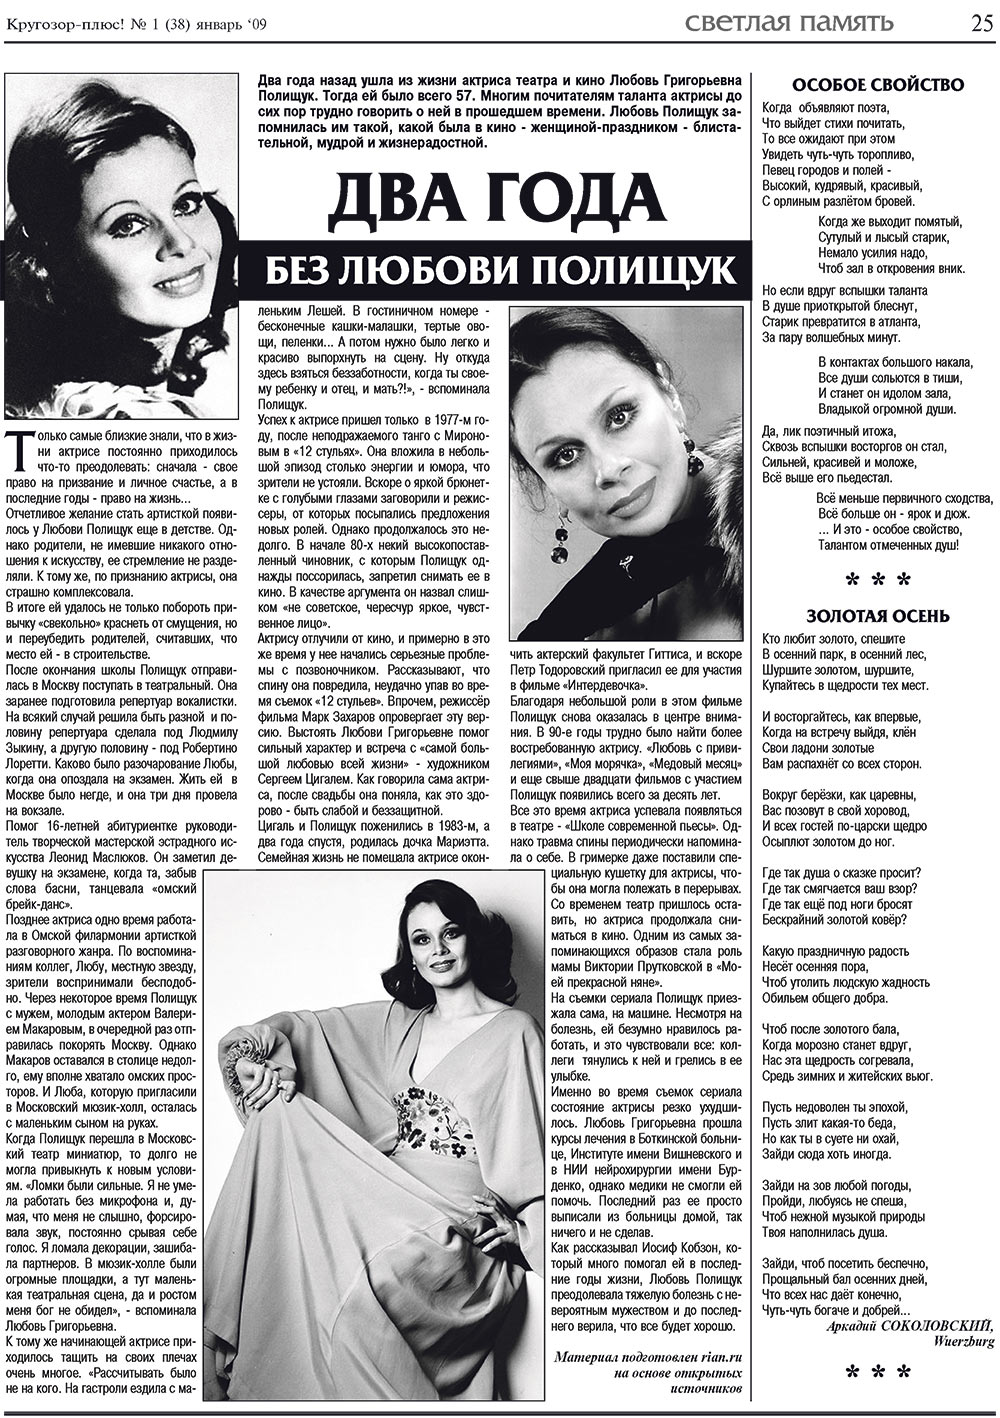 Кругозор плюс!, газета. 2009 №1 стр.25